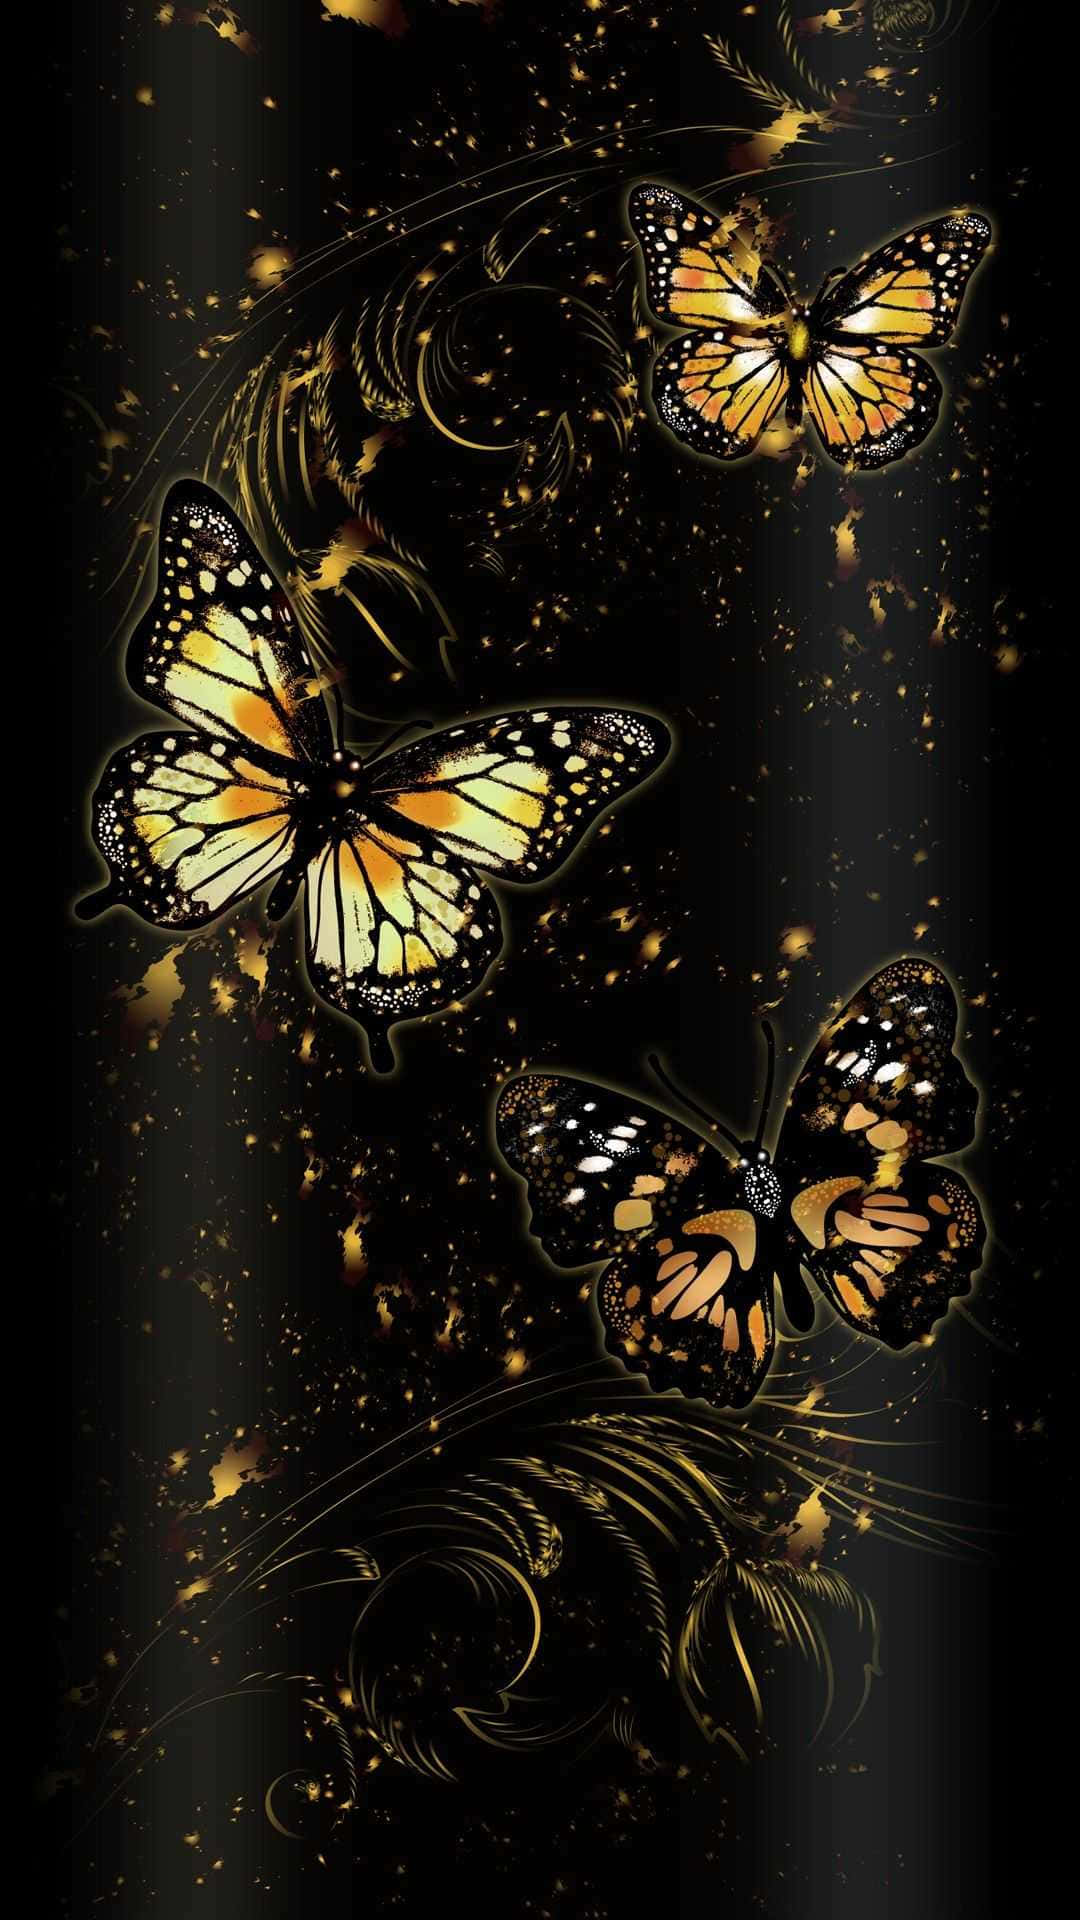 Umaborboleta Colorida Com Brilho E Asas Cintilantes. Papel de Parede